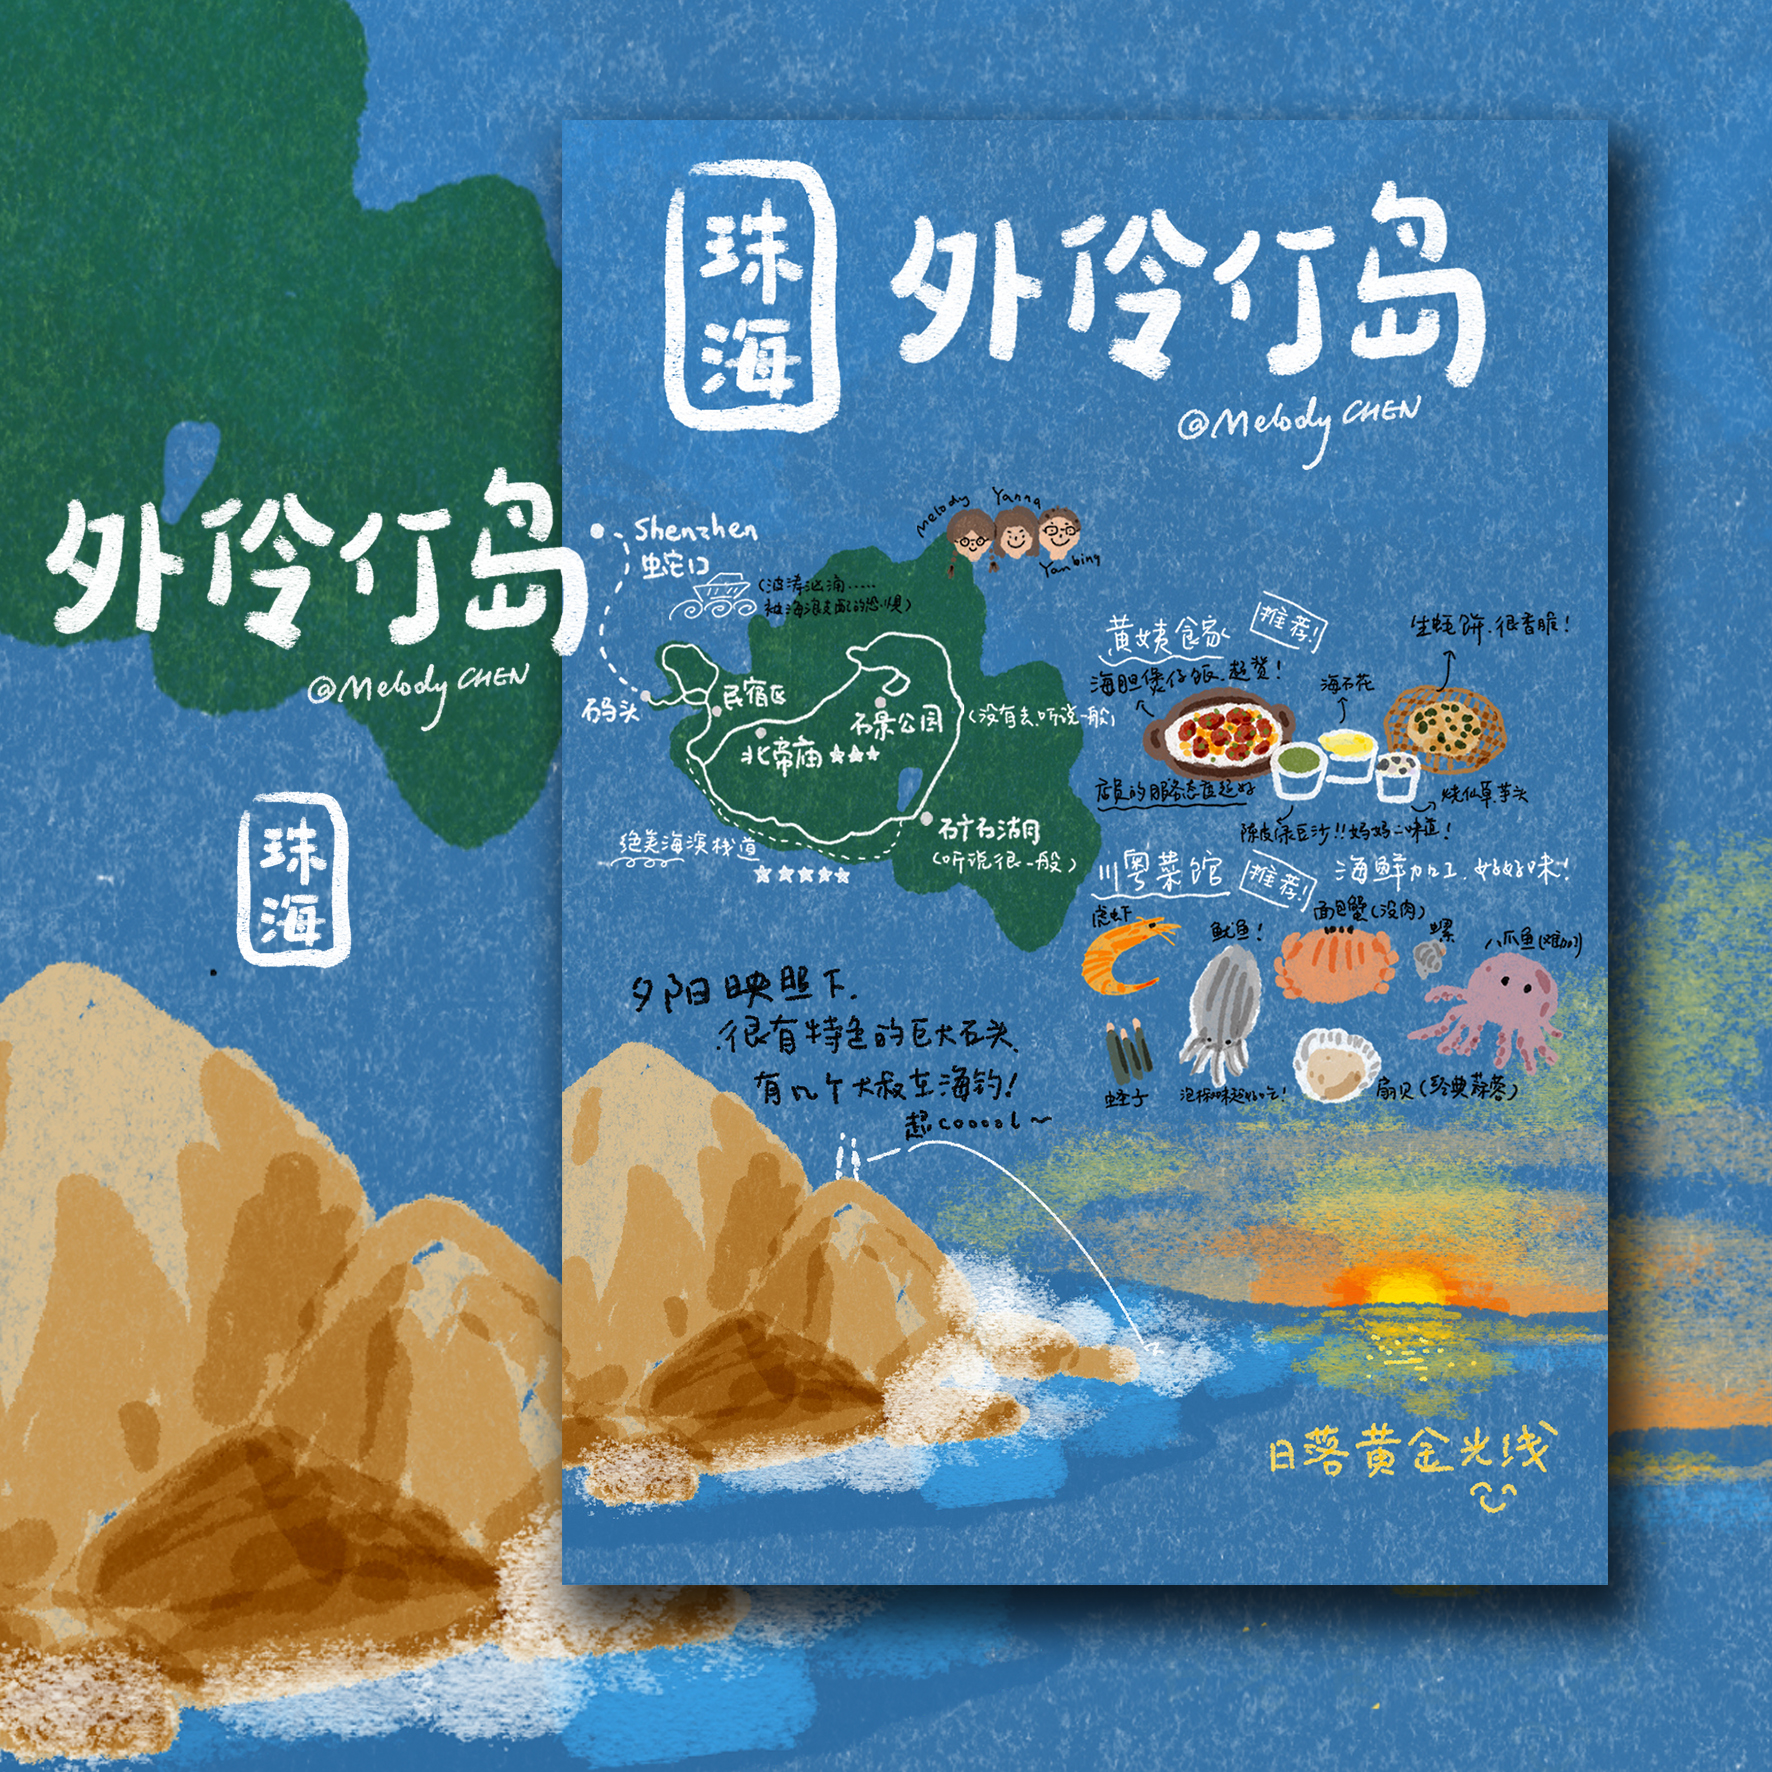 原创 插画明信片 手绘风格 创意旅行地图 珠海 外伶仃岛 单张售